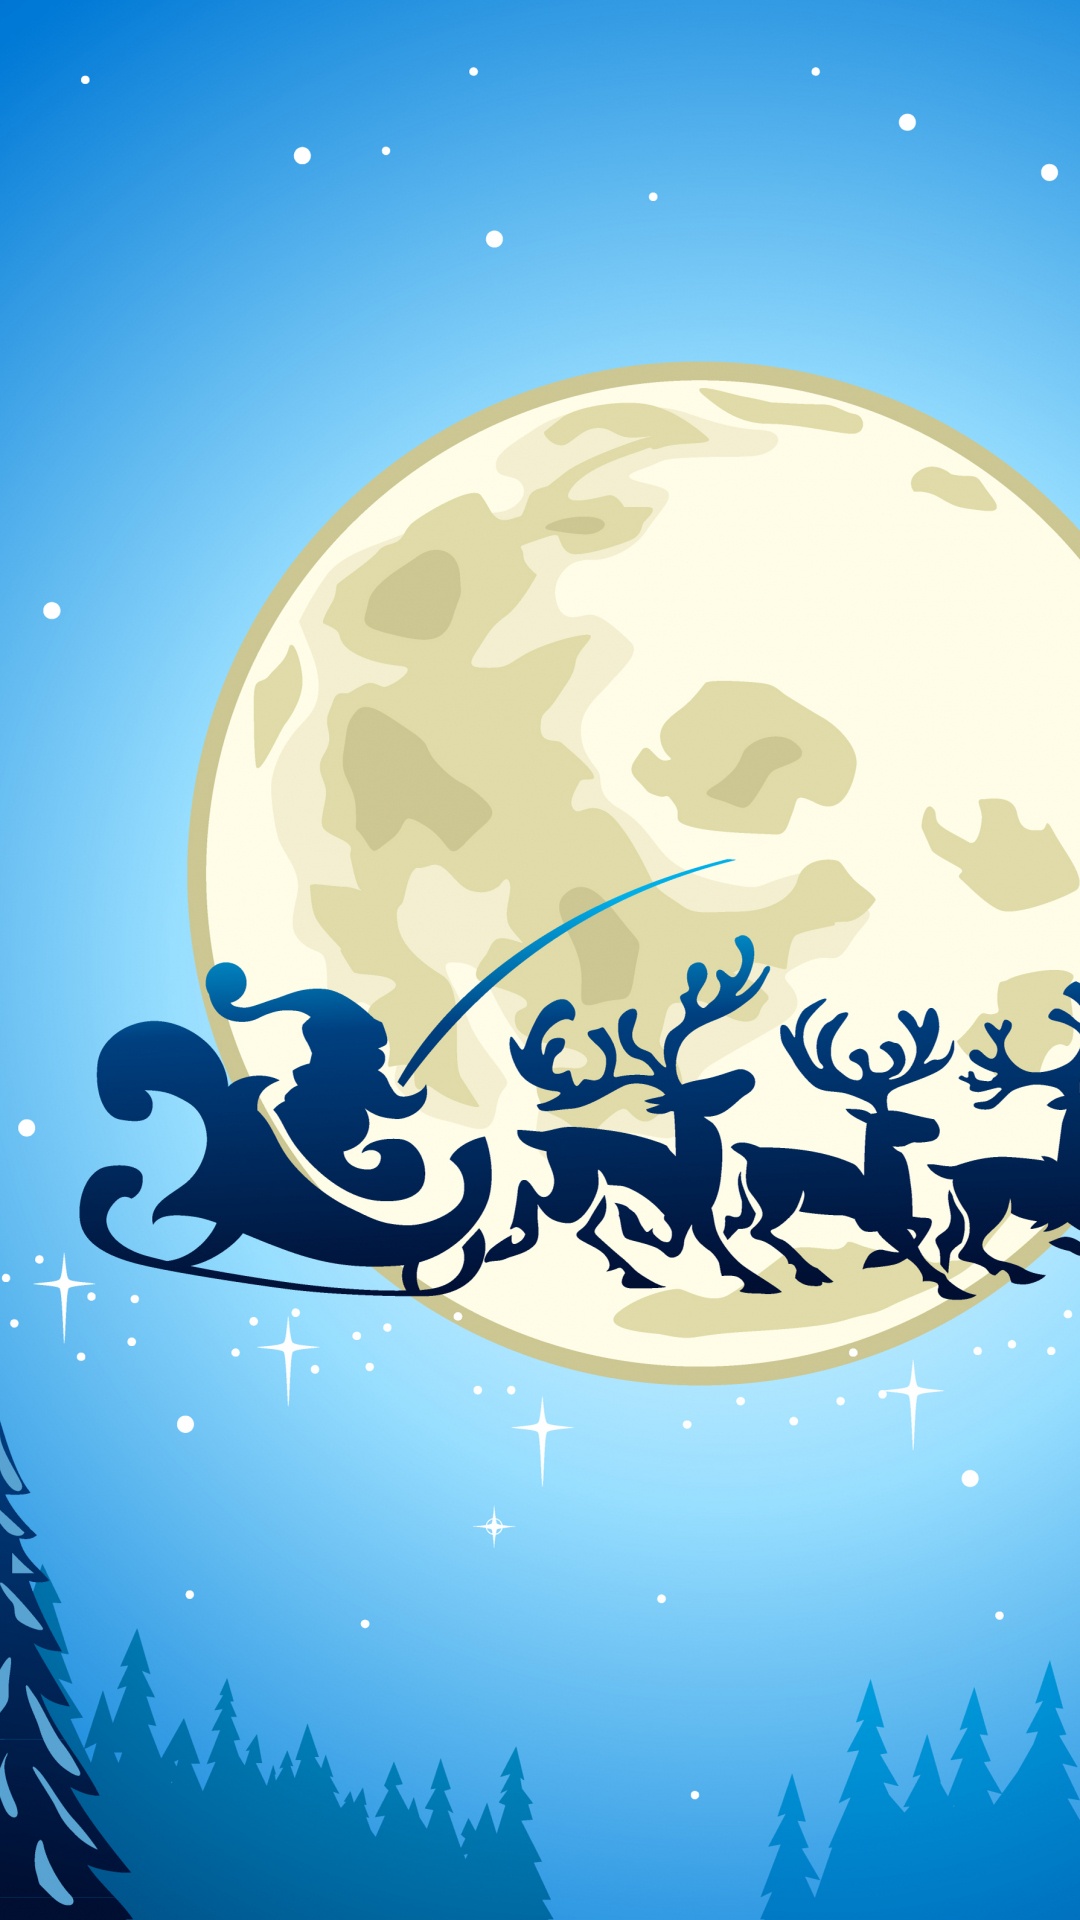 圣诞节那天, 圣诞老人, 圣诞节, 月亮, 副执行主任莫罗兹 壁纸 1080x1920 允许